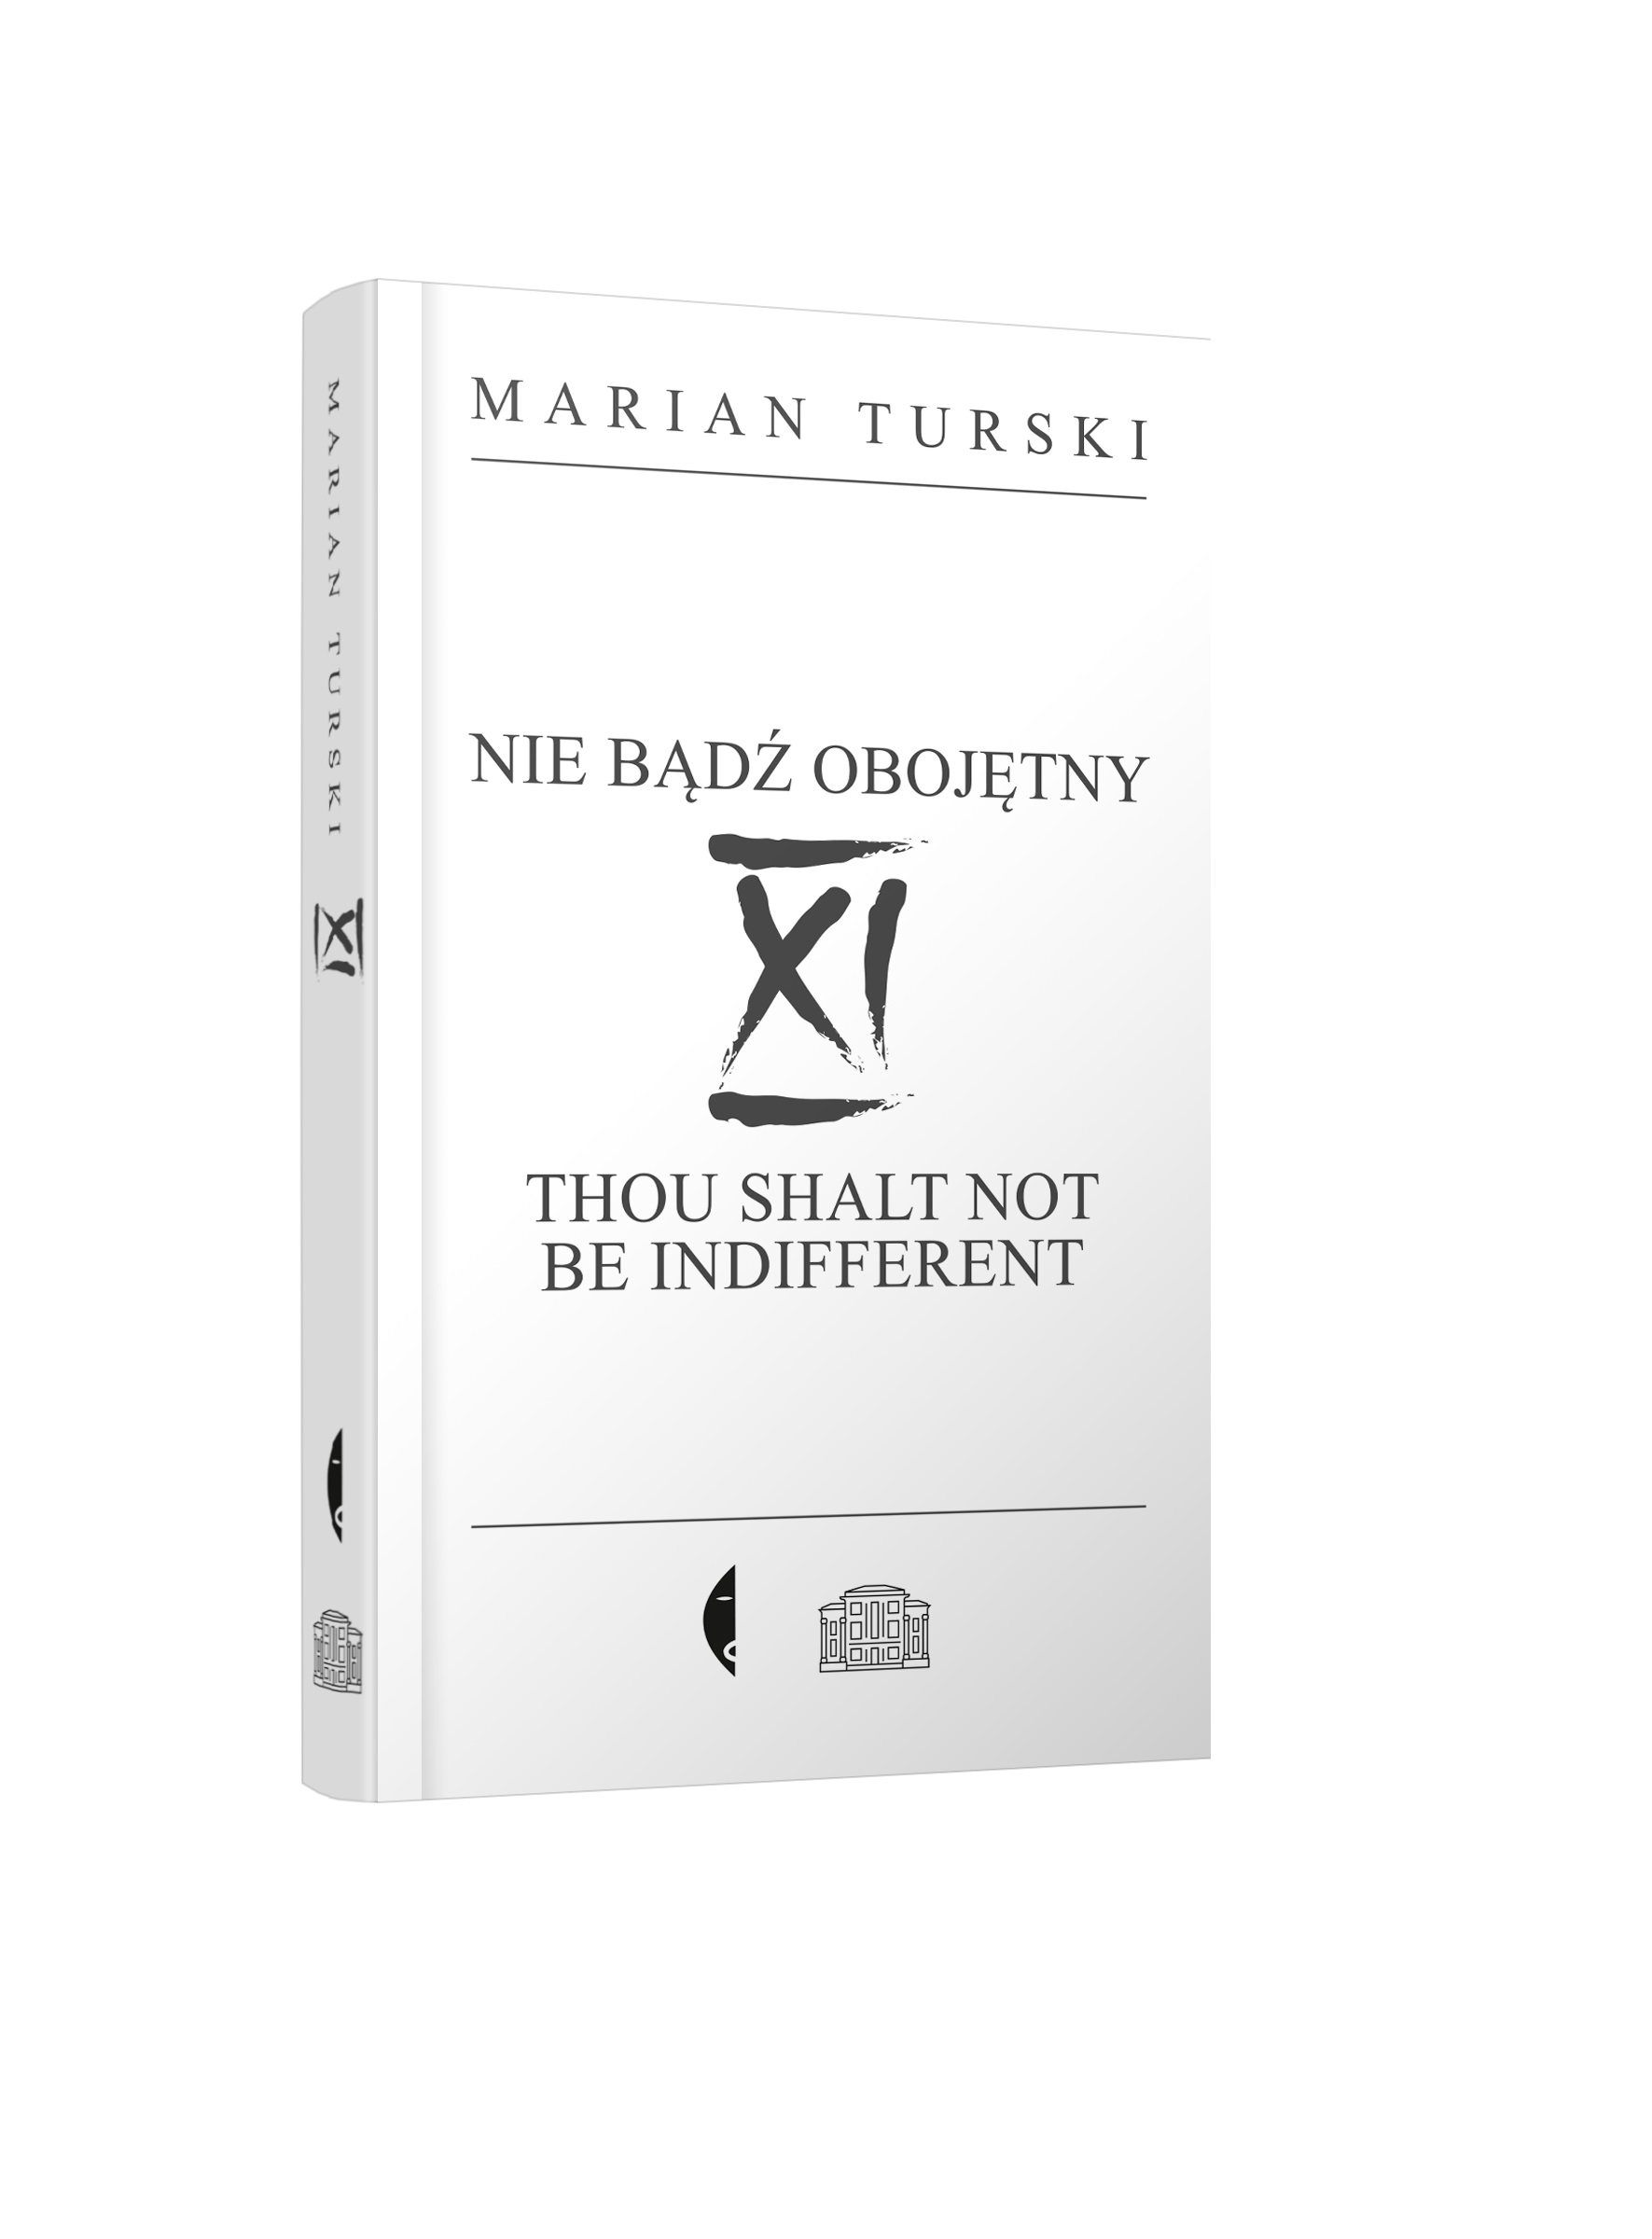 Na obrazie widzimy okładkę książki "XI Nie bądź obojętny" autorstwa Mariana Turskiego. 